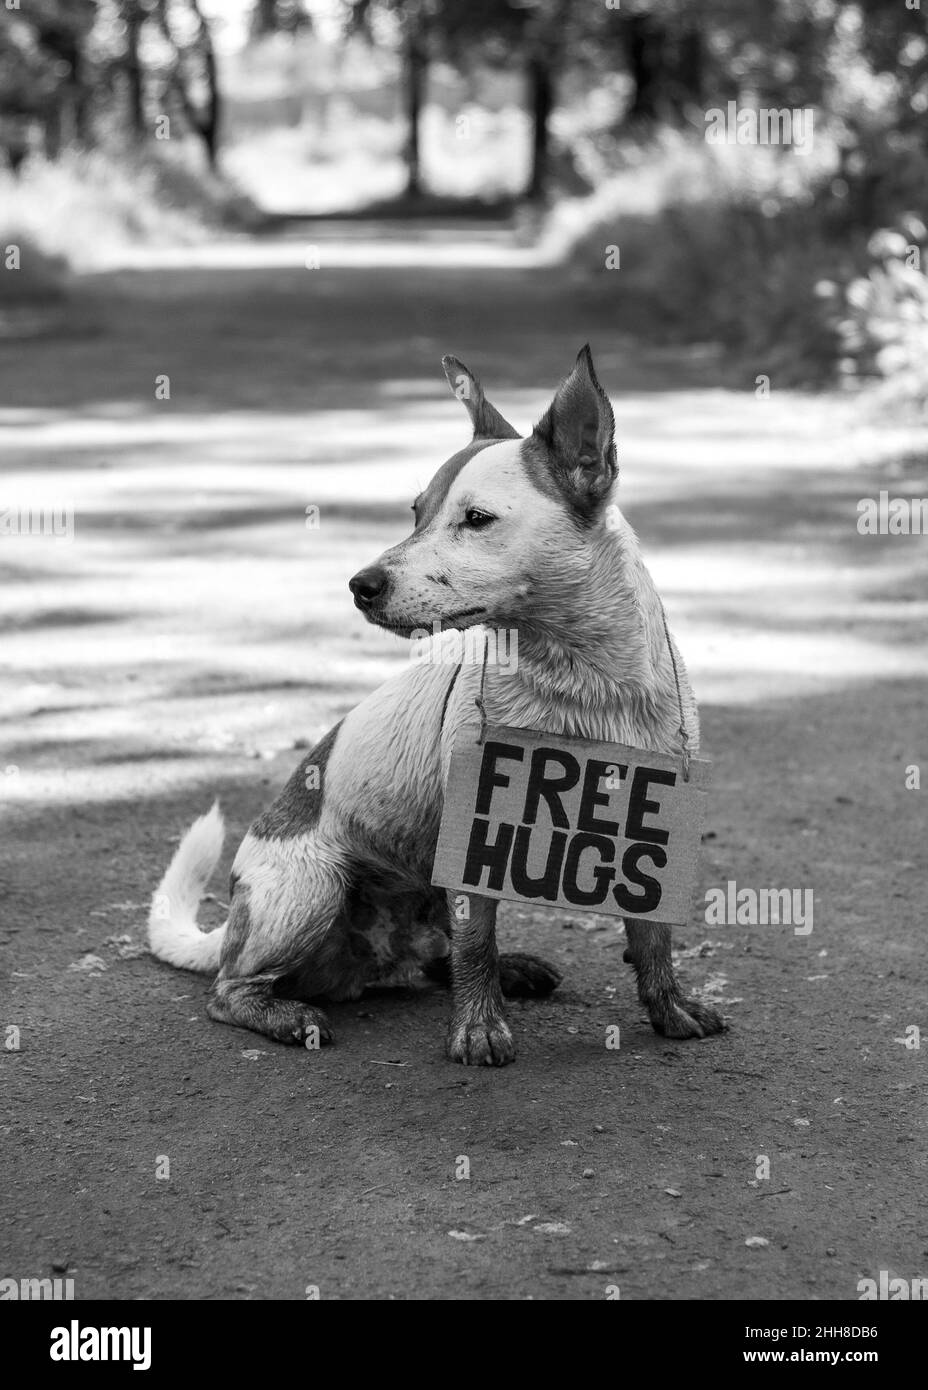 Un chien de race Jack Russell Terrier se trouve à moitié tourné dans la forêt sur un chemin, avec un panneau en carton « Free Hugs » sur son cou. Il est recouvert de boue, encore une fois Banque D'Images